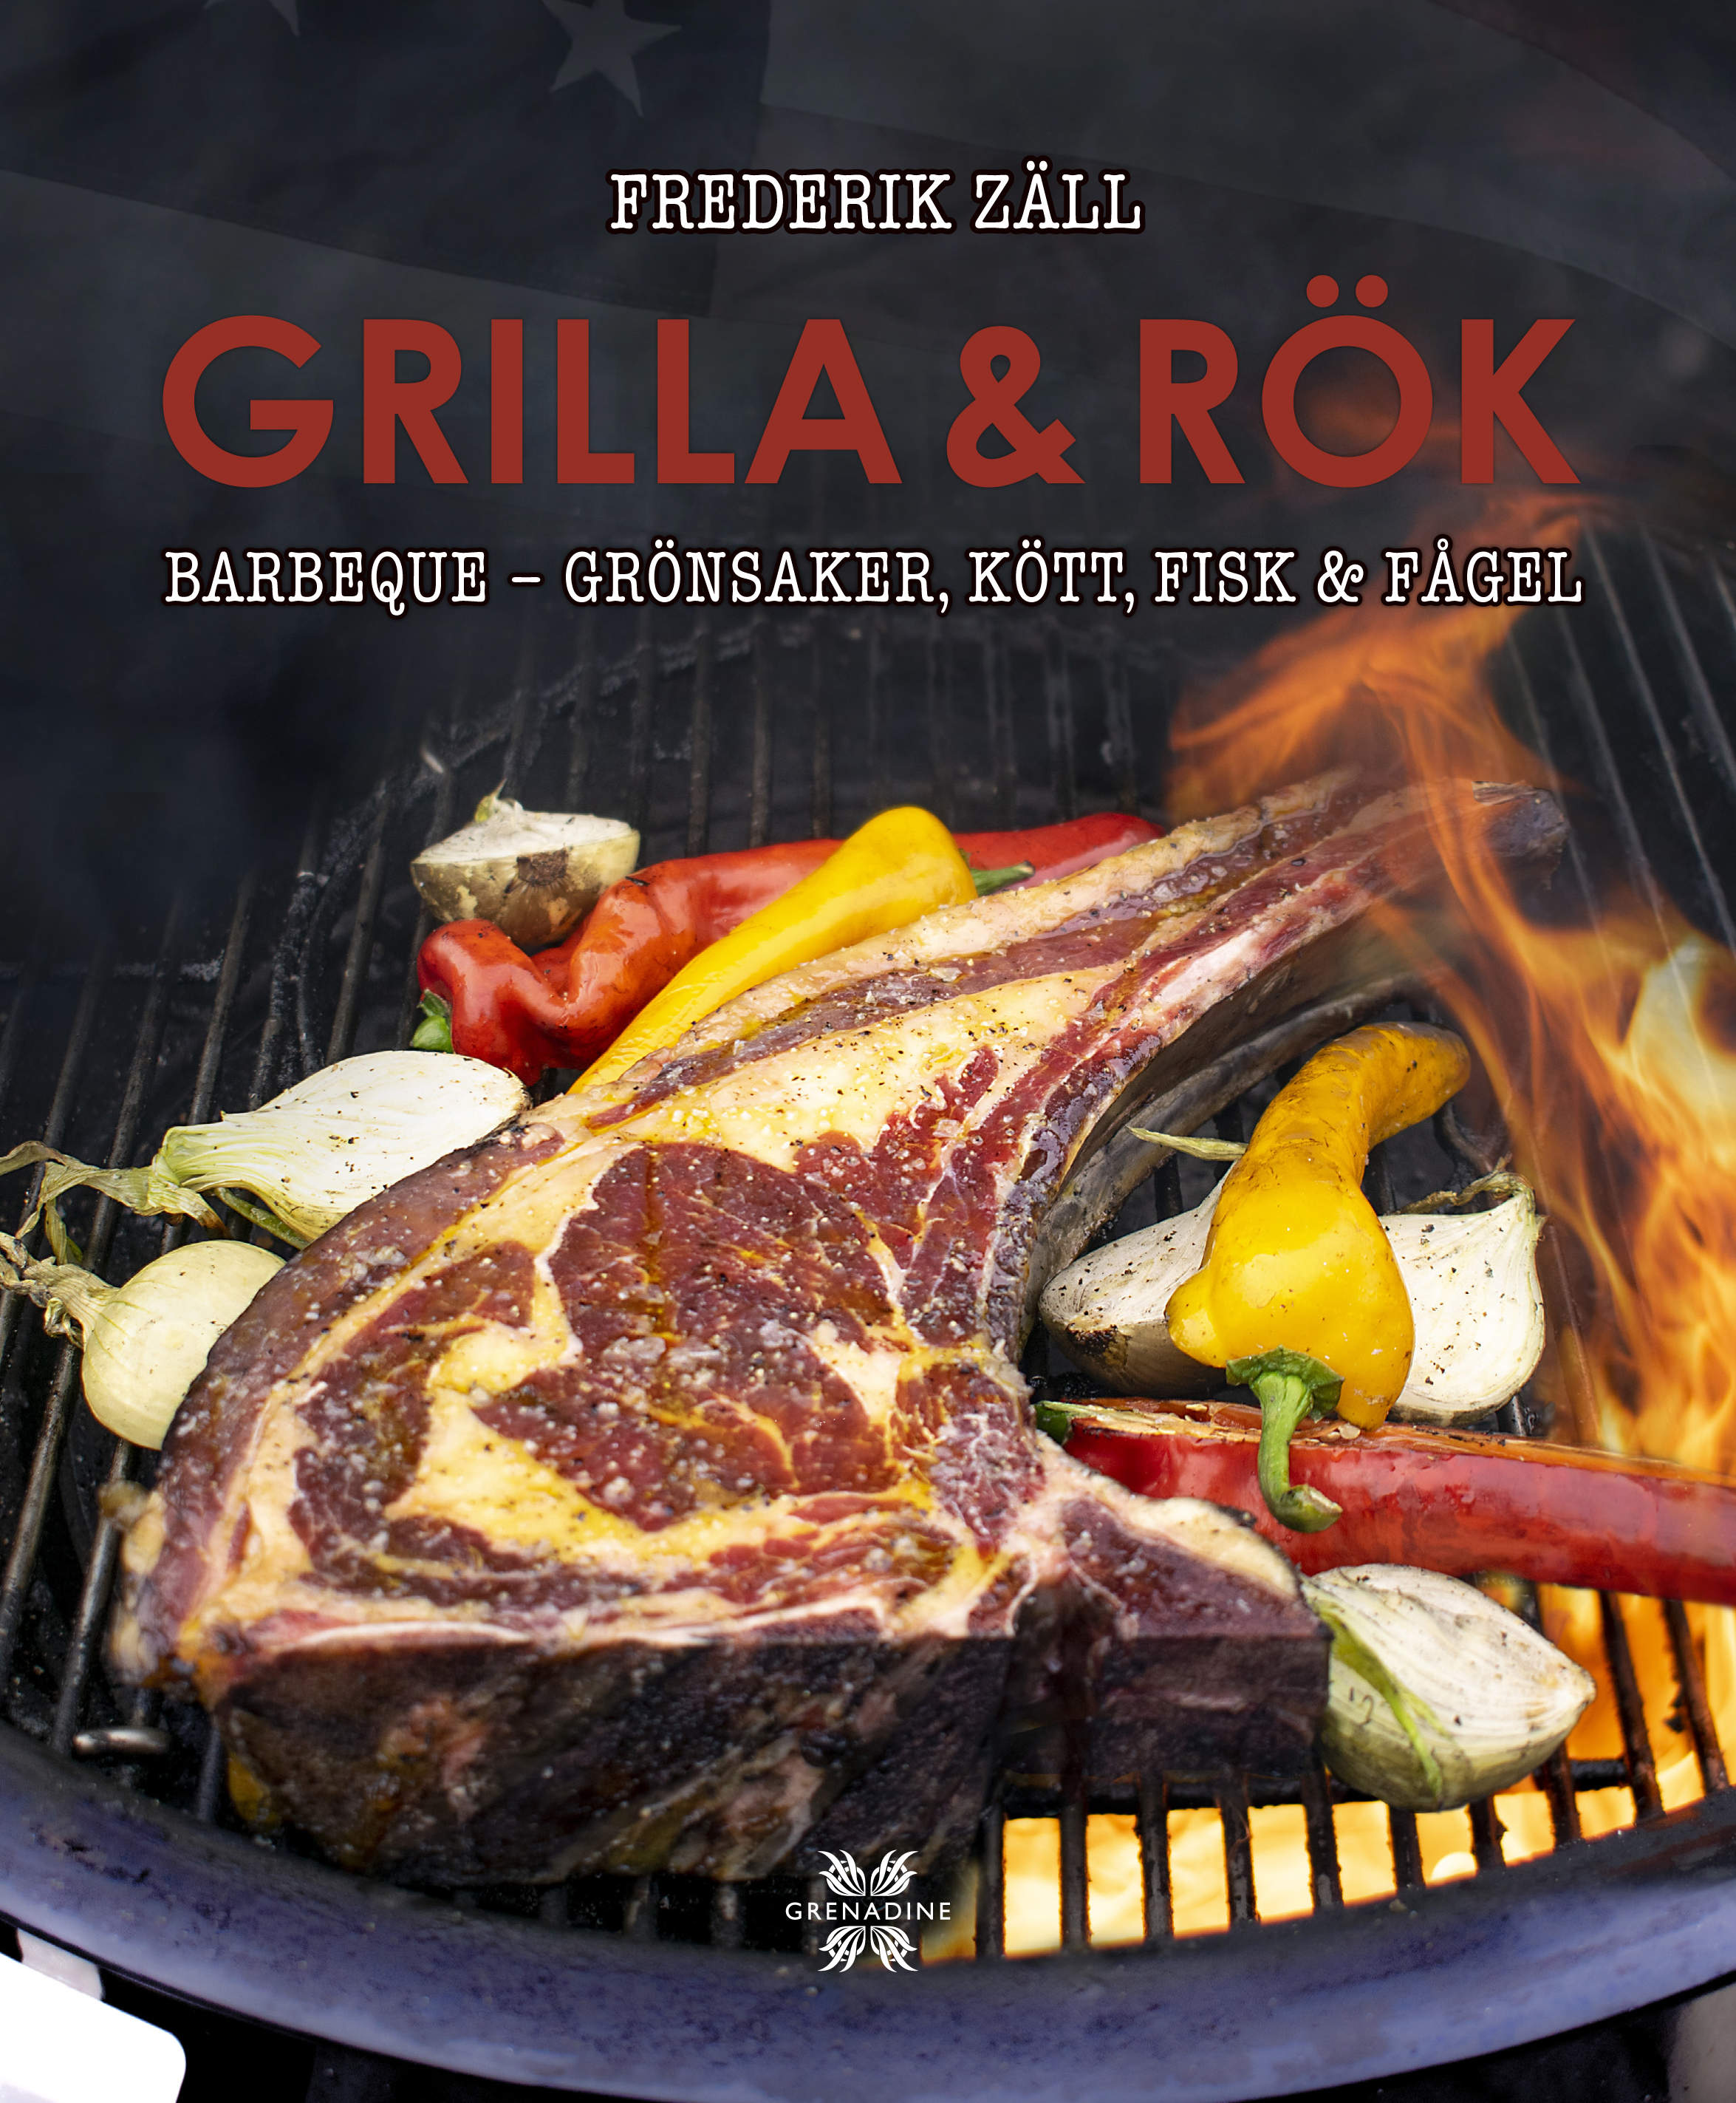 Grilla & rök: Barbeque – grönsaker, kött, fisk & fågel, 2019 är skriven av författaren Frederik Zäll, Grenadine Bokförlag.